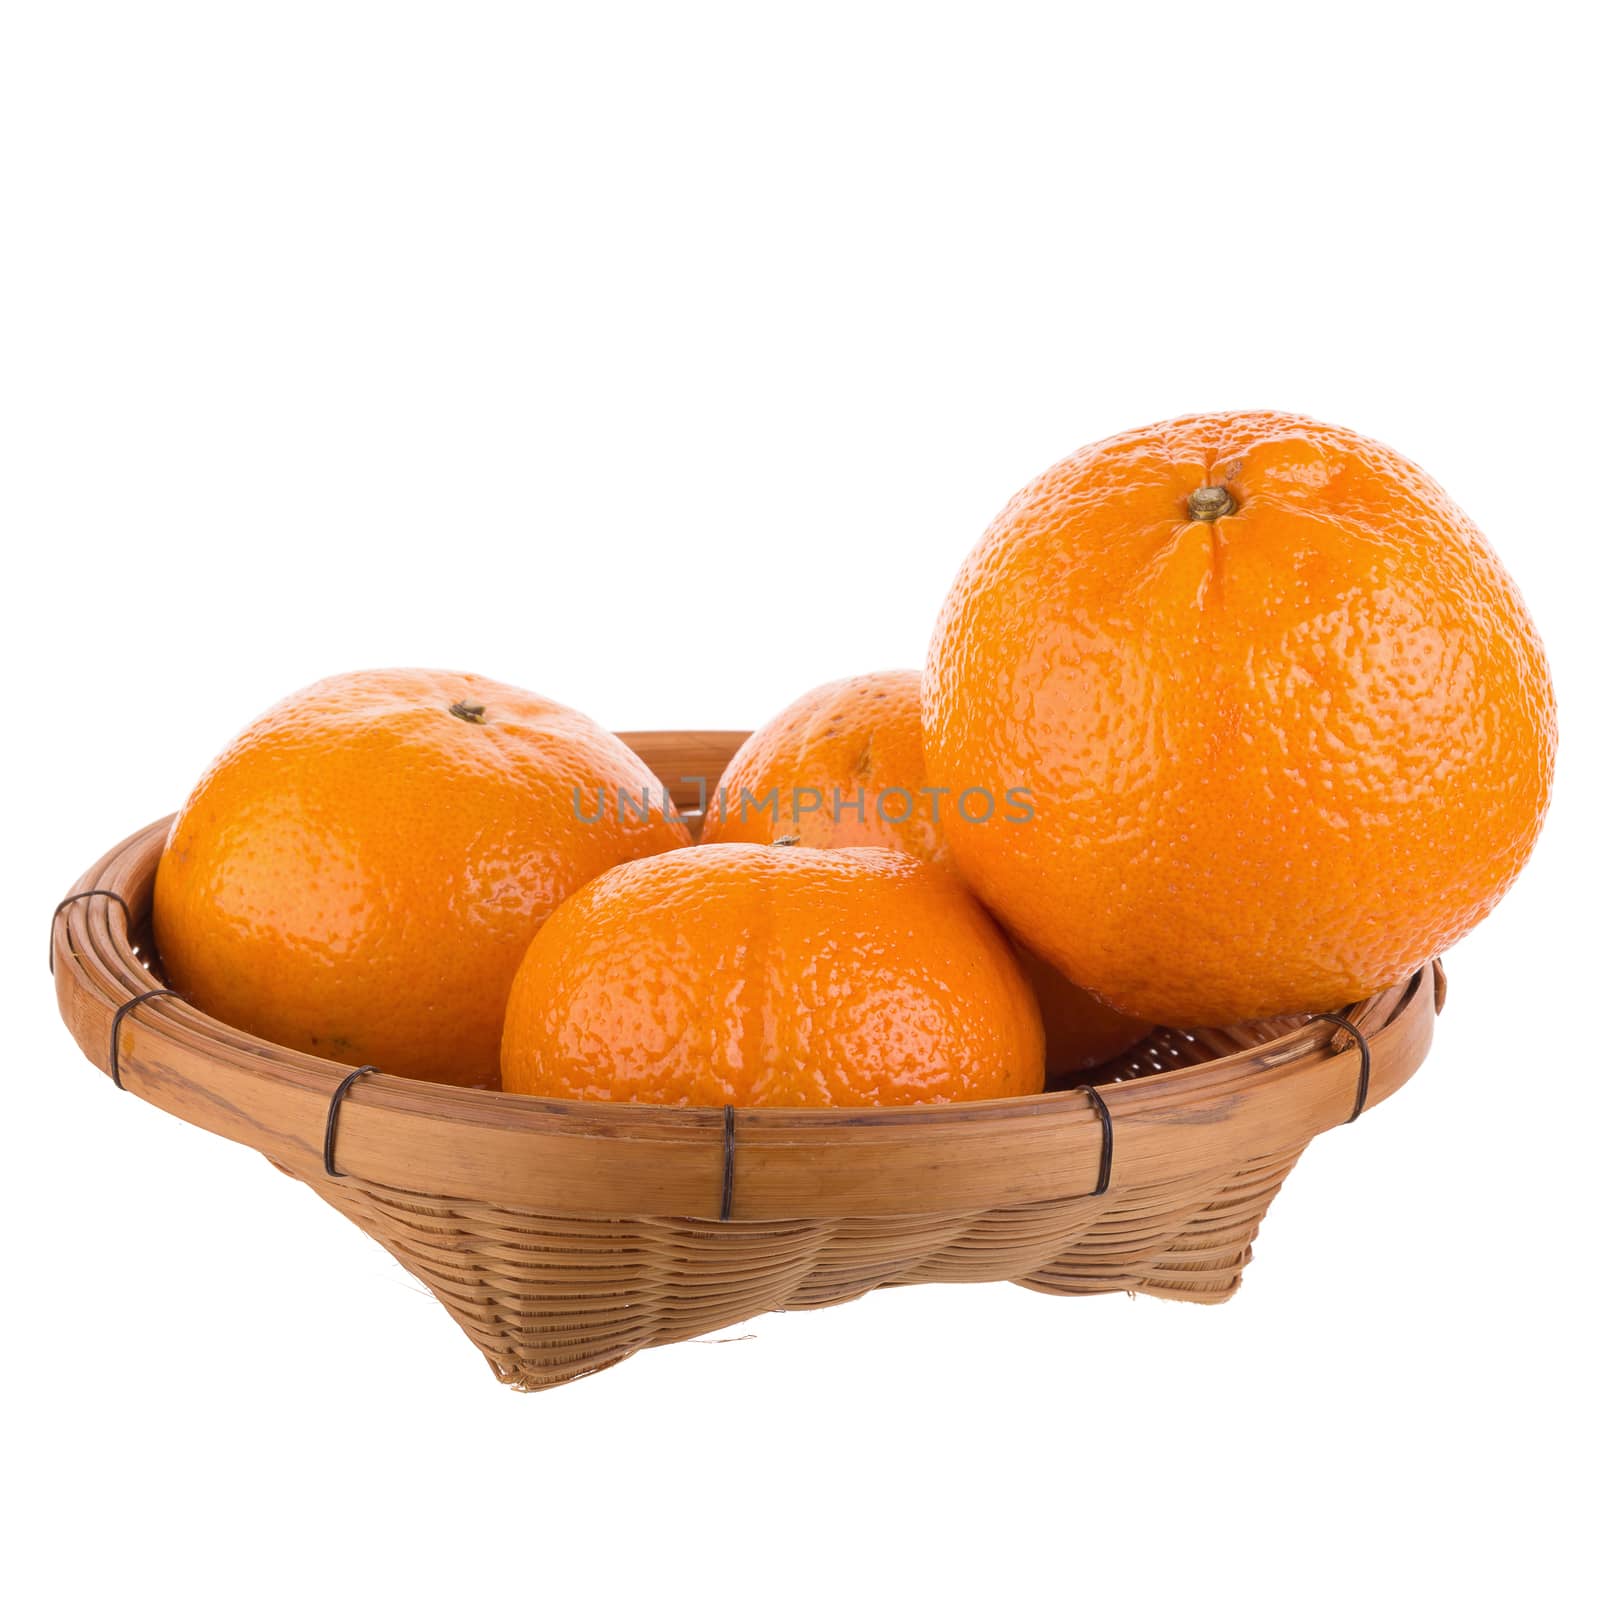 fresh orange fruit isolated on white background by kaiskynet